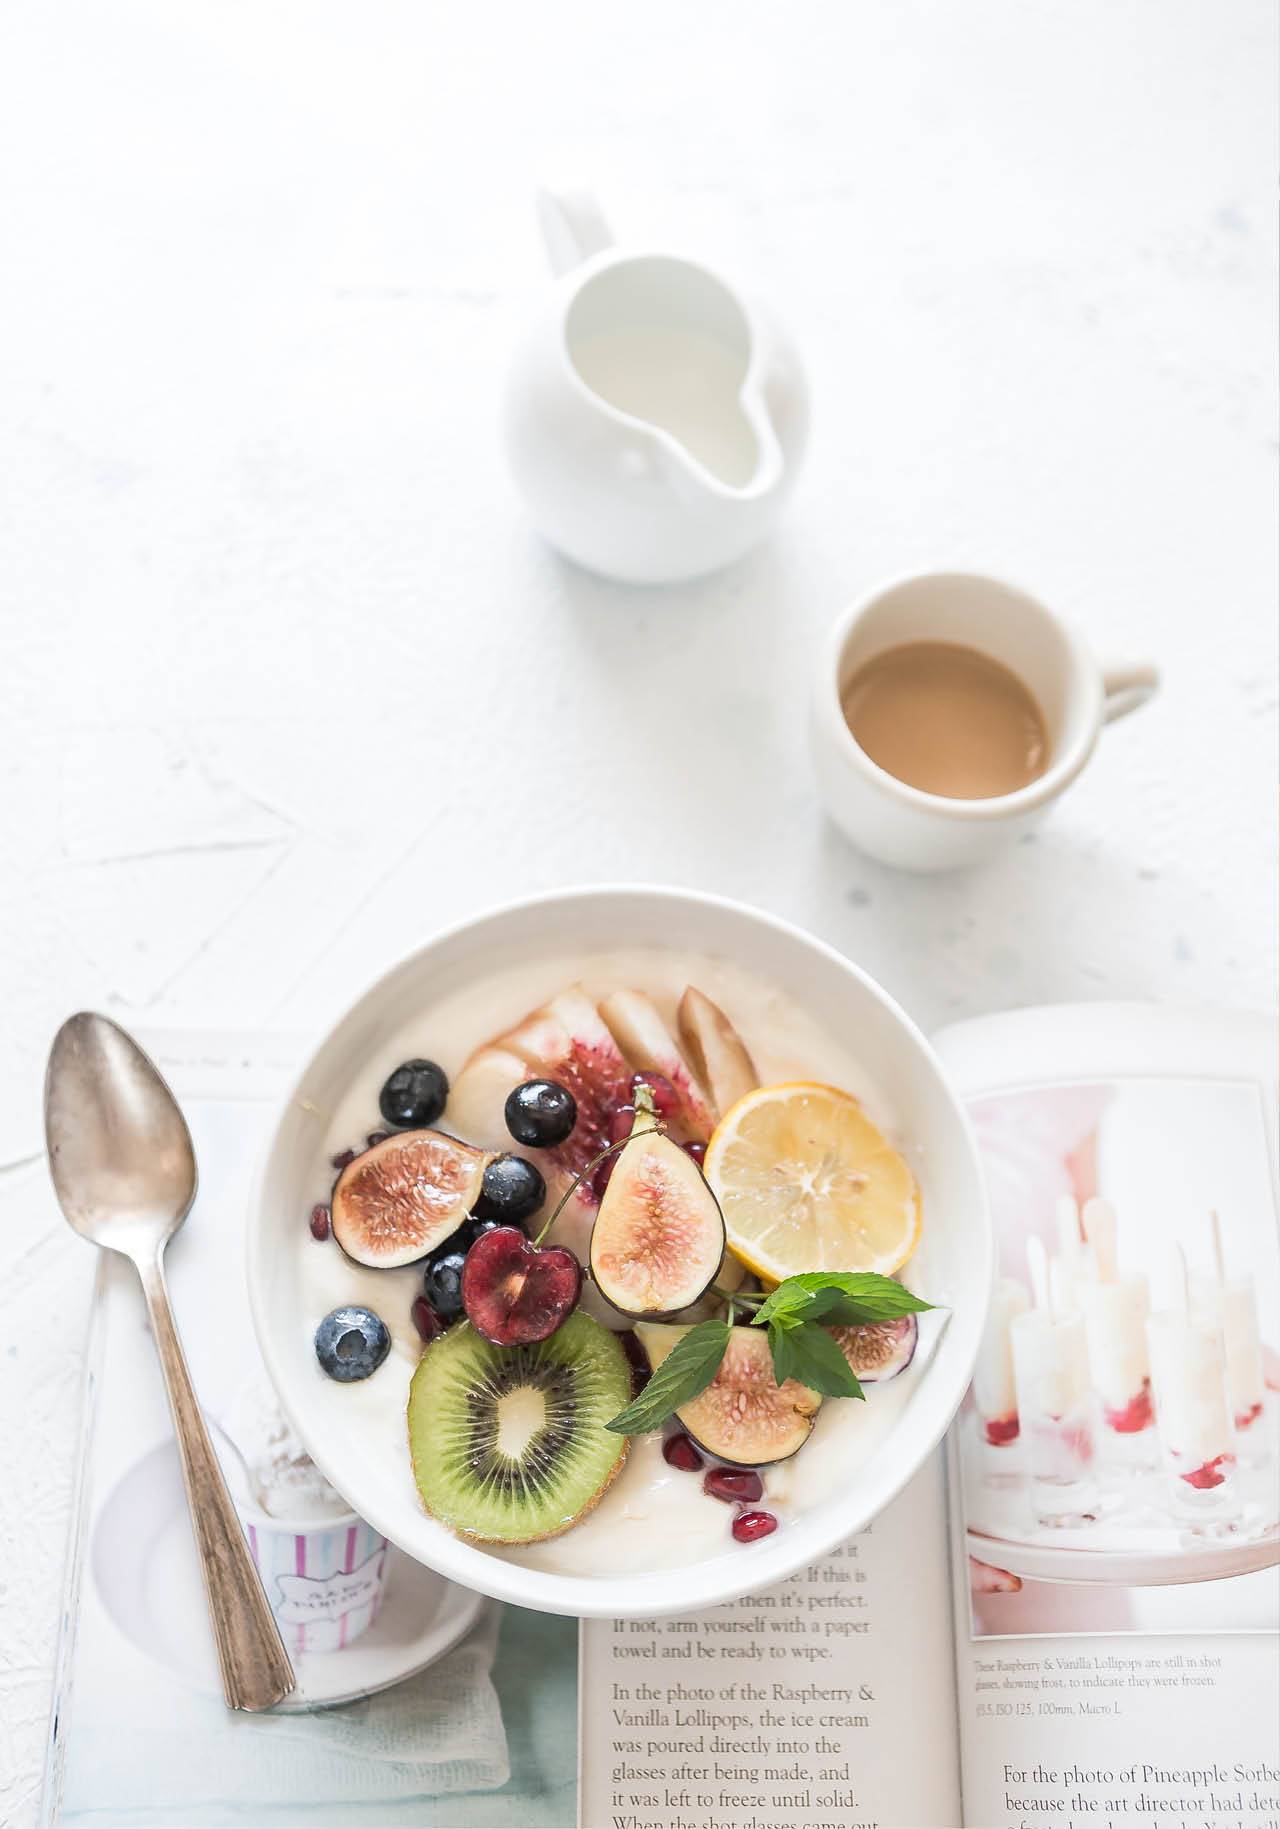 dieta para bajar de peso economica y sin cocinar desayuno